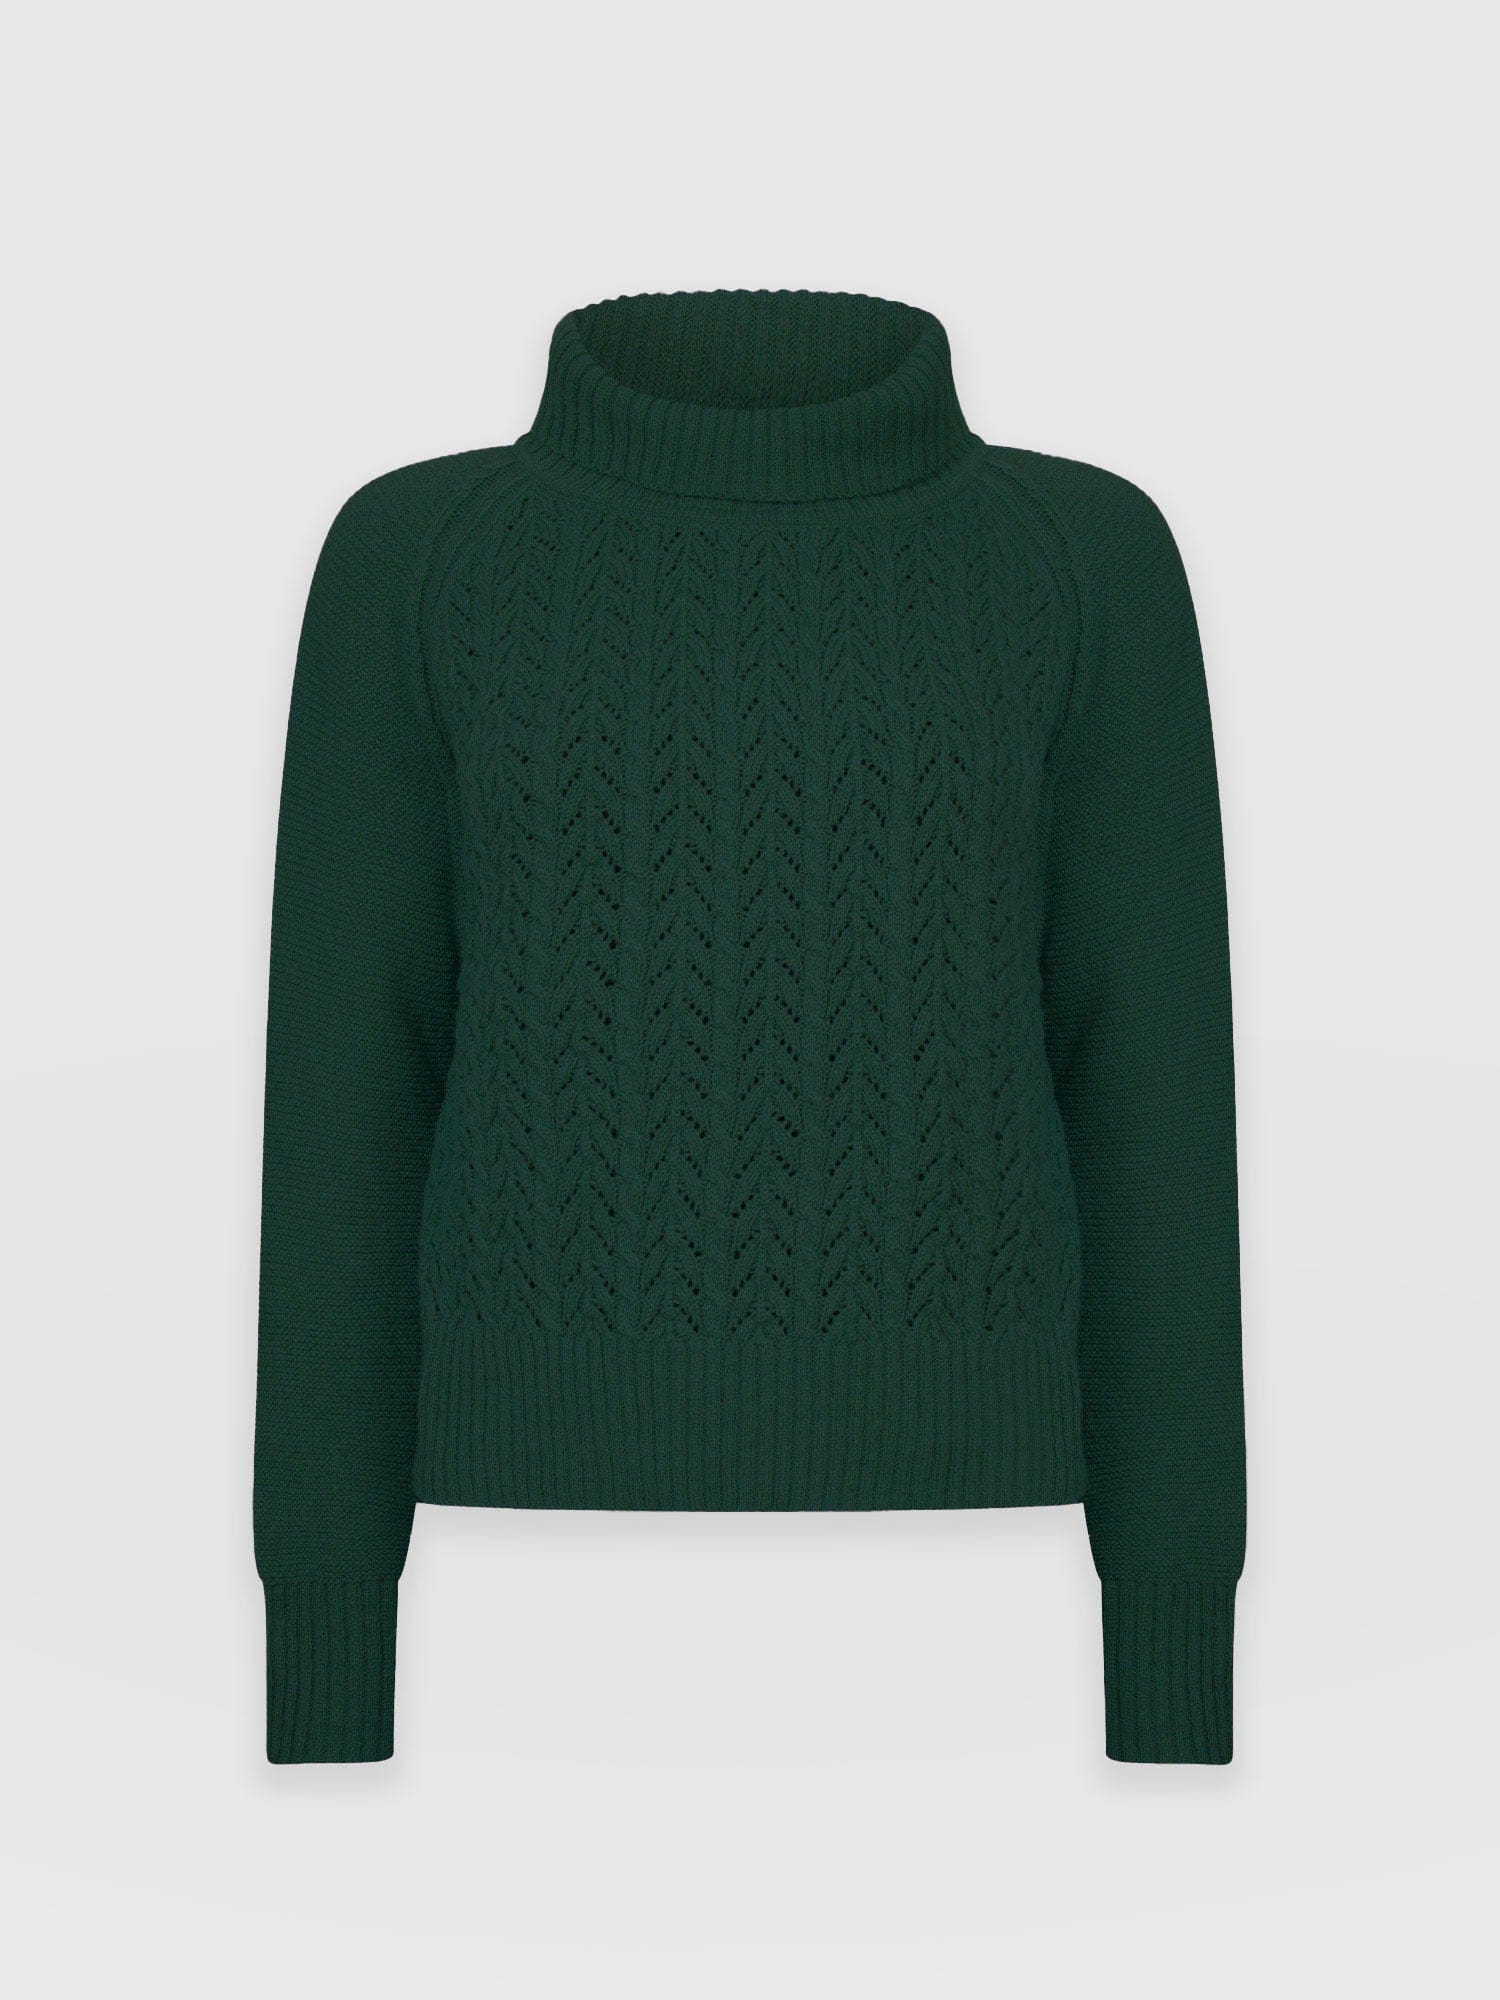 Shop Women's Sweaters | Saint + Sofia® USA